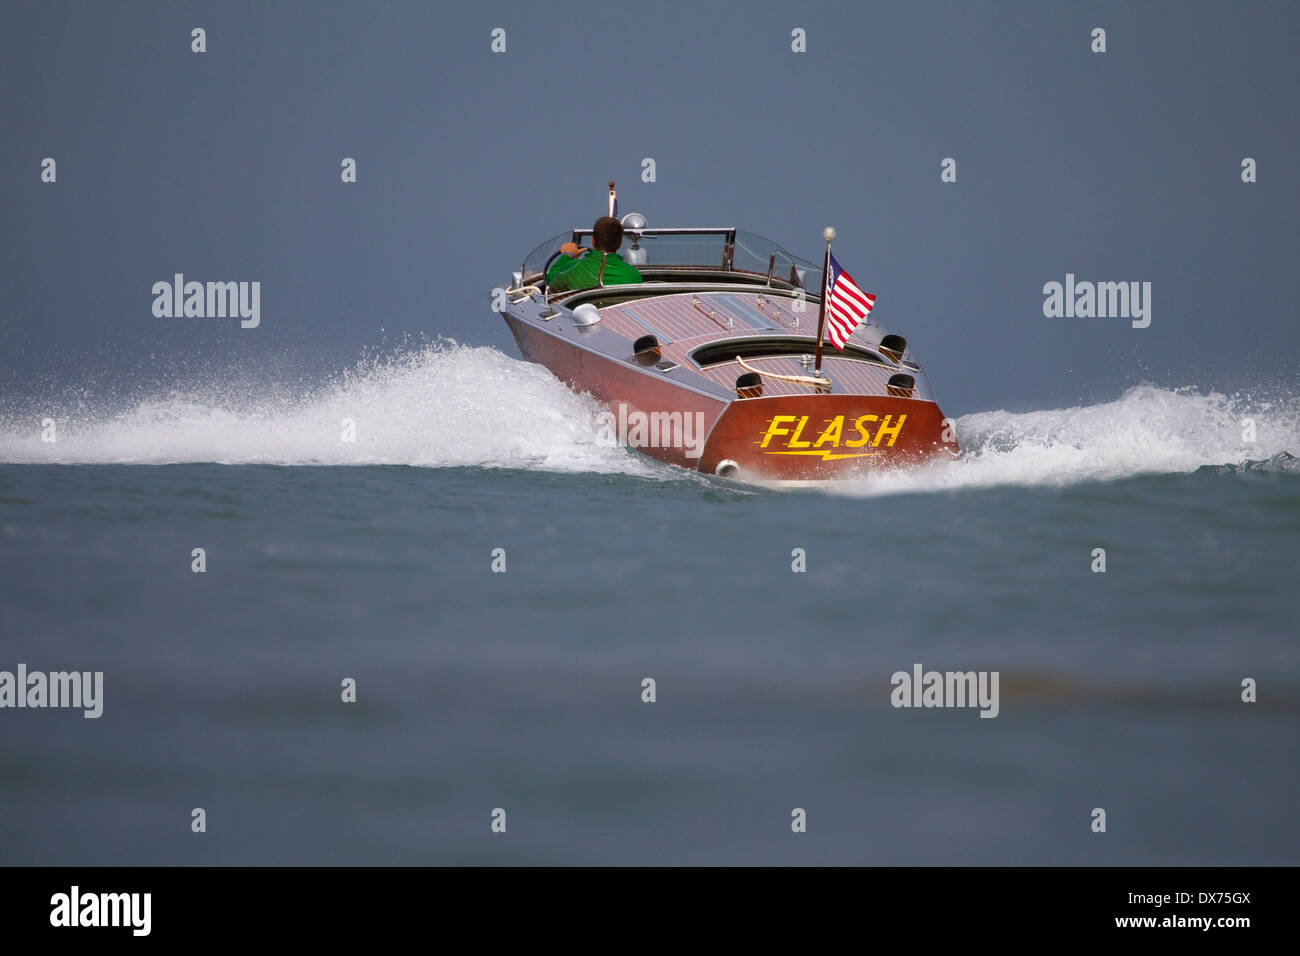 Un homme conduisant un ancien bateau en bois Hacker-Craft à vitesse. Banque D'Images